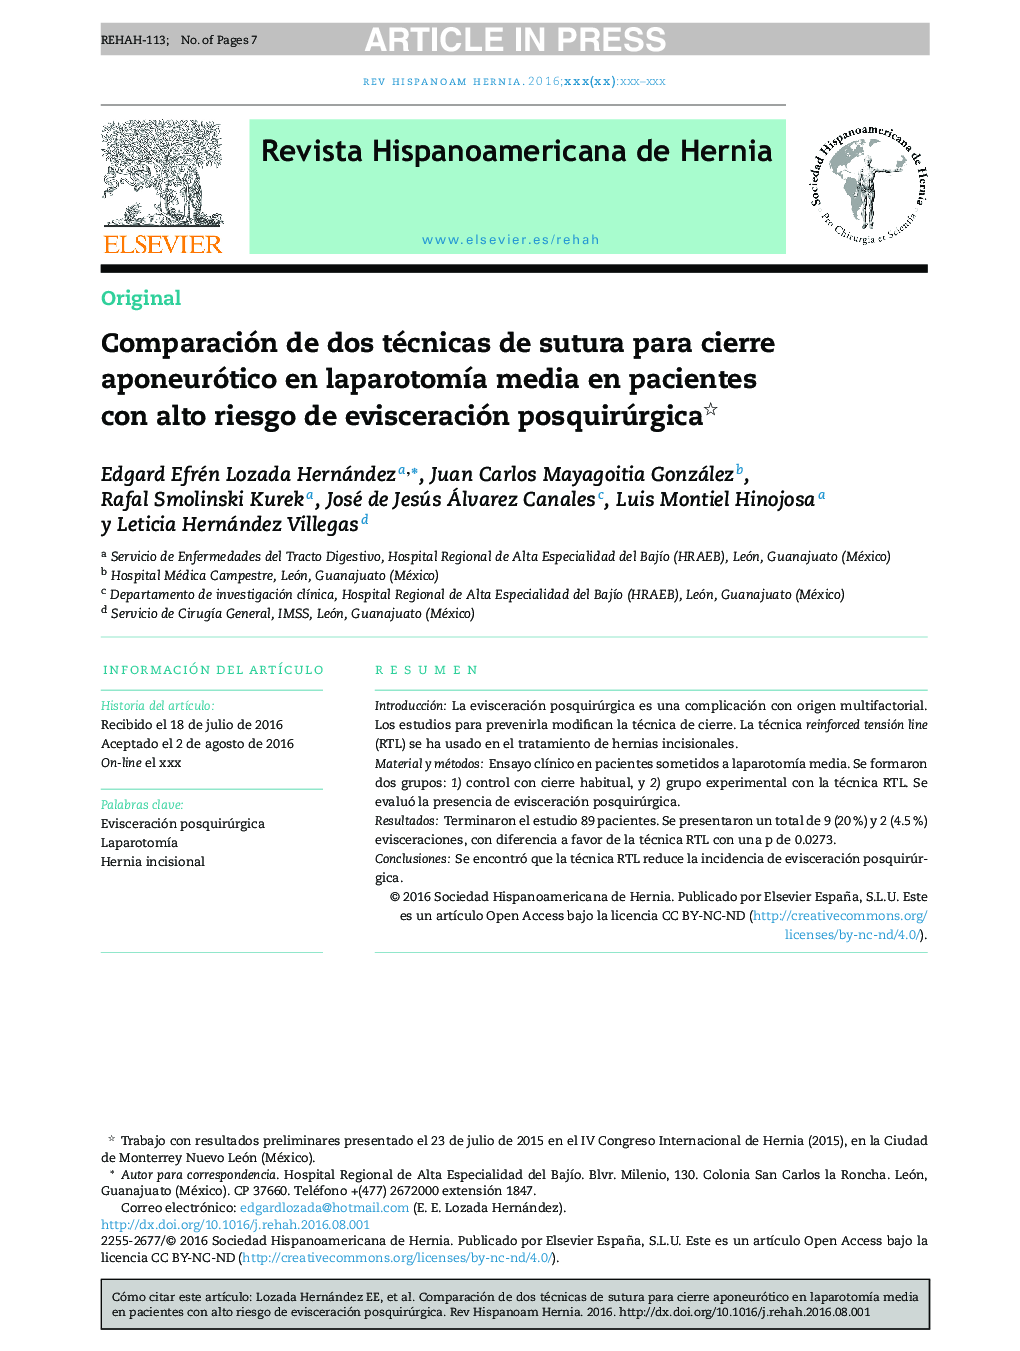 Comparación de dos técnicas de sutura para cierre aponeurótico en laparotomÃ­a media en pacientes con alto riesgo de evisceración posquirúrgica